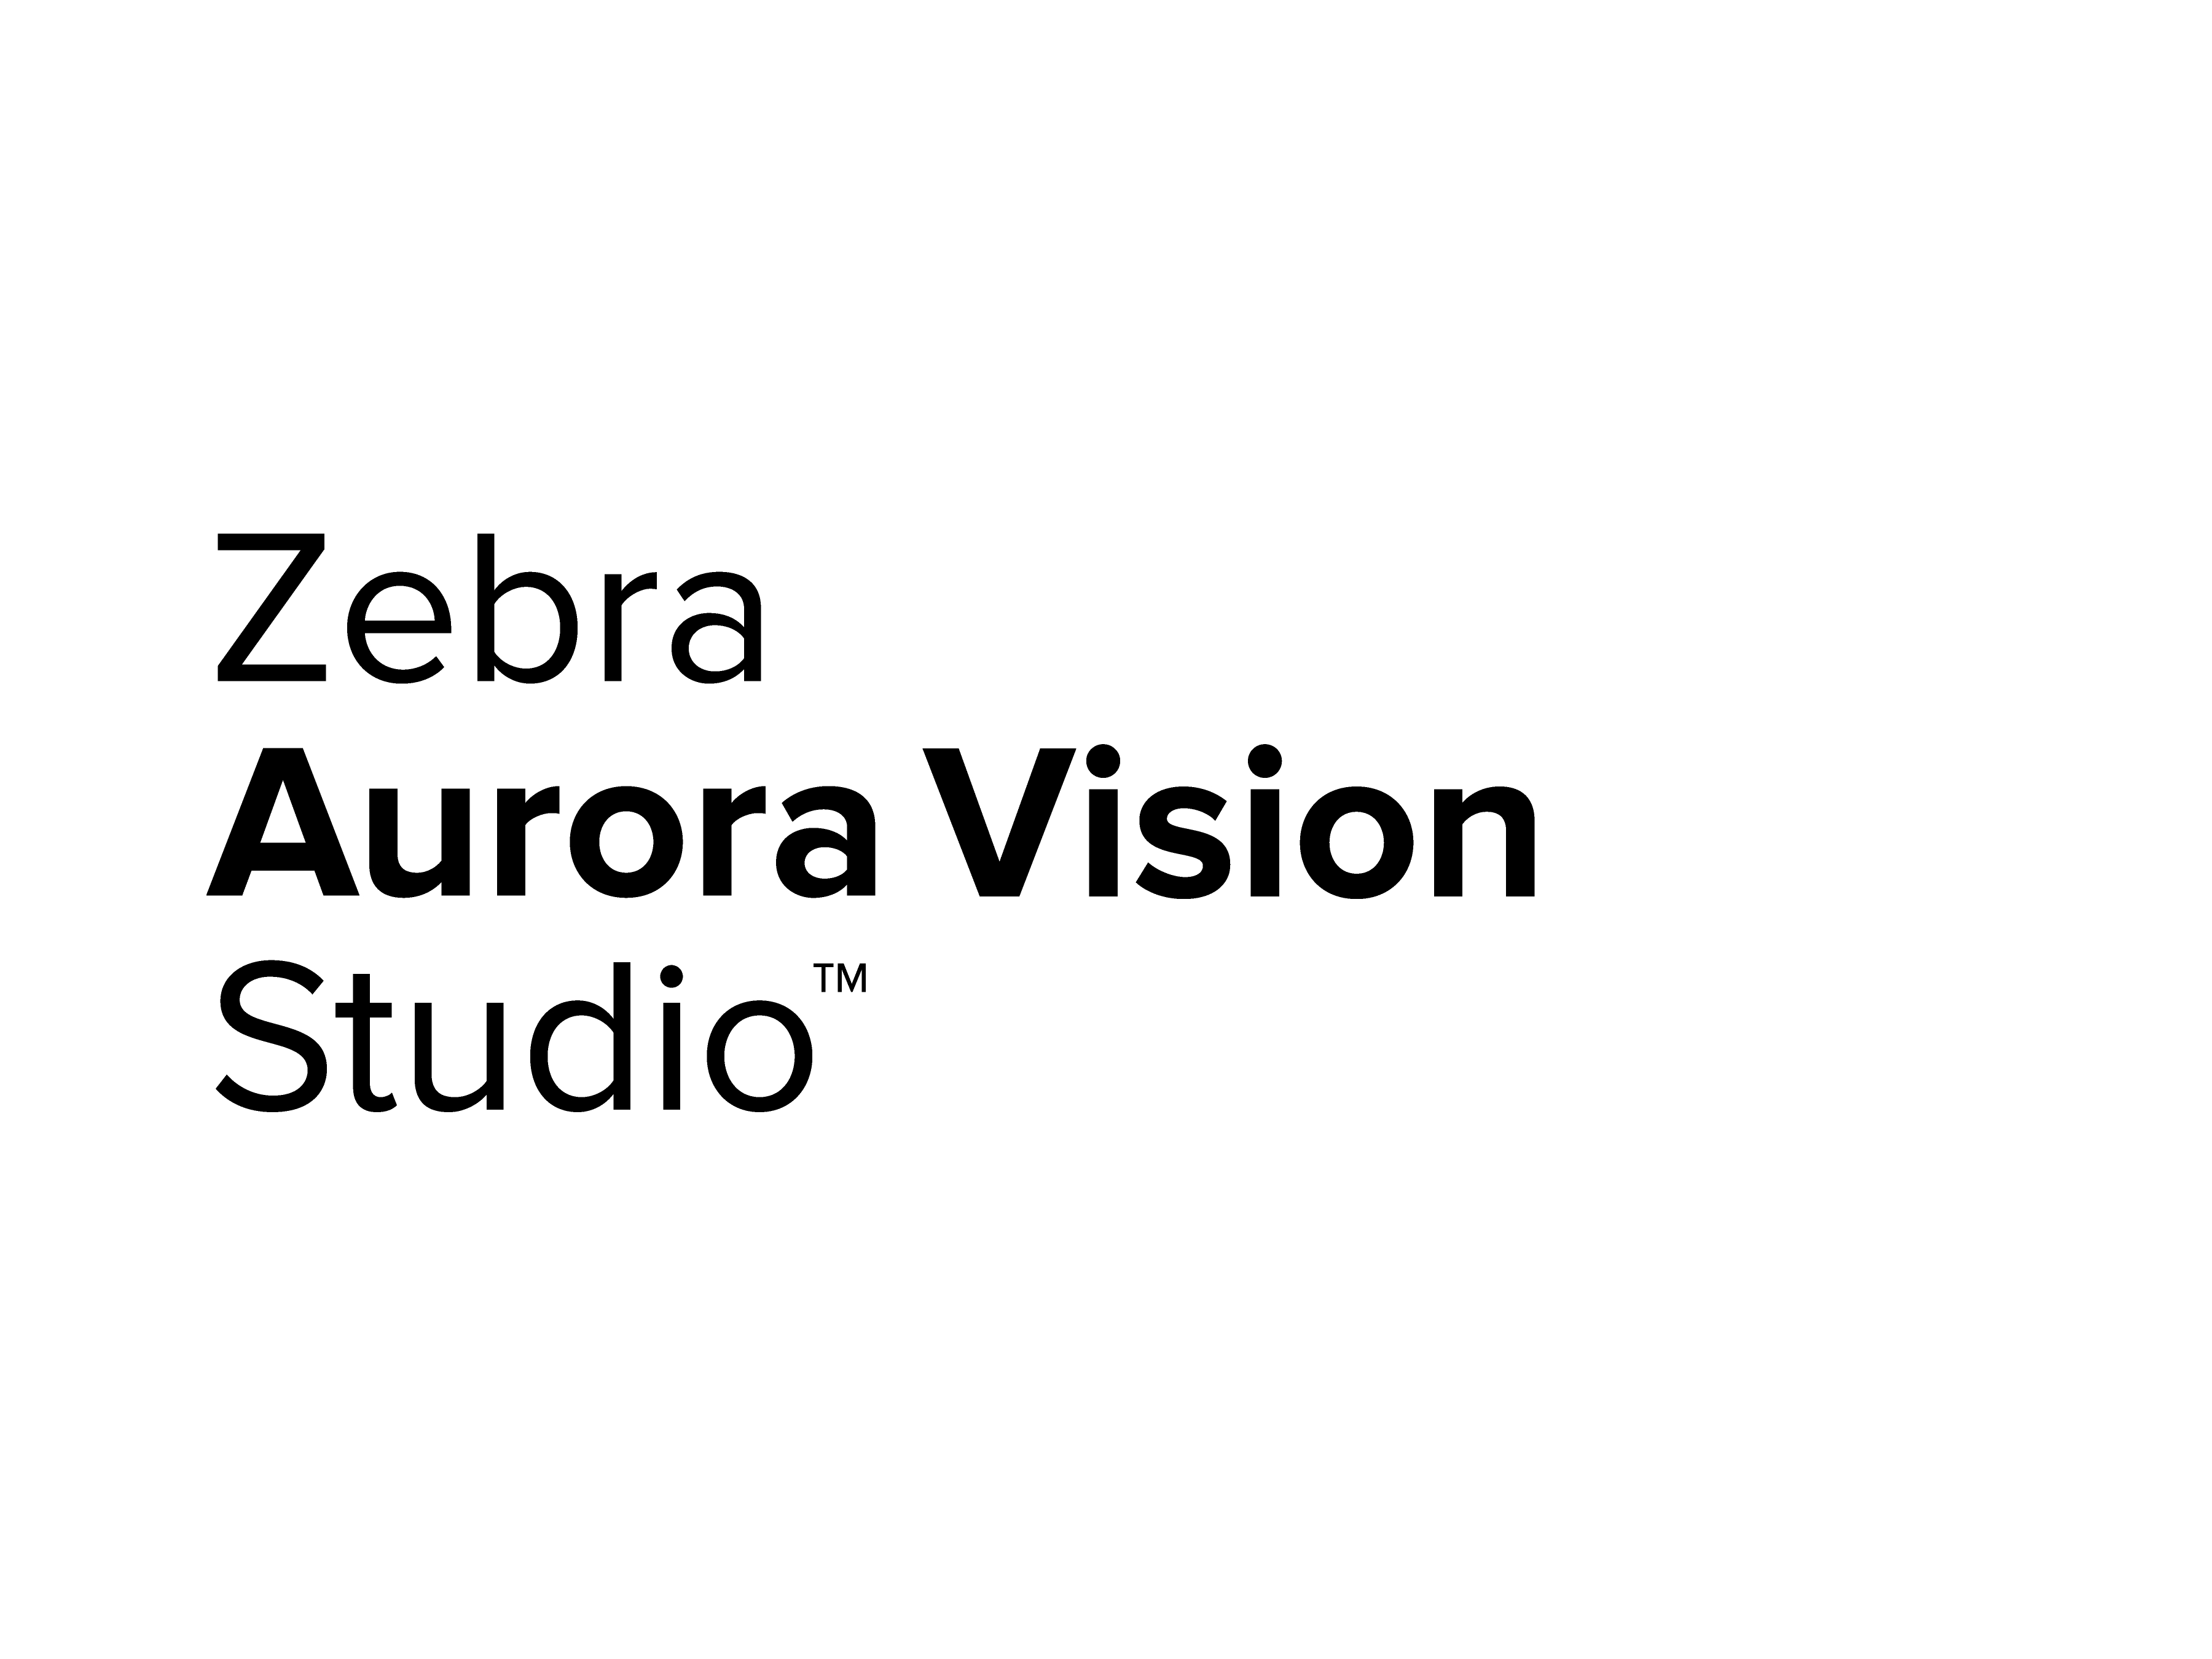 Zebra Aurora Vision Studio